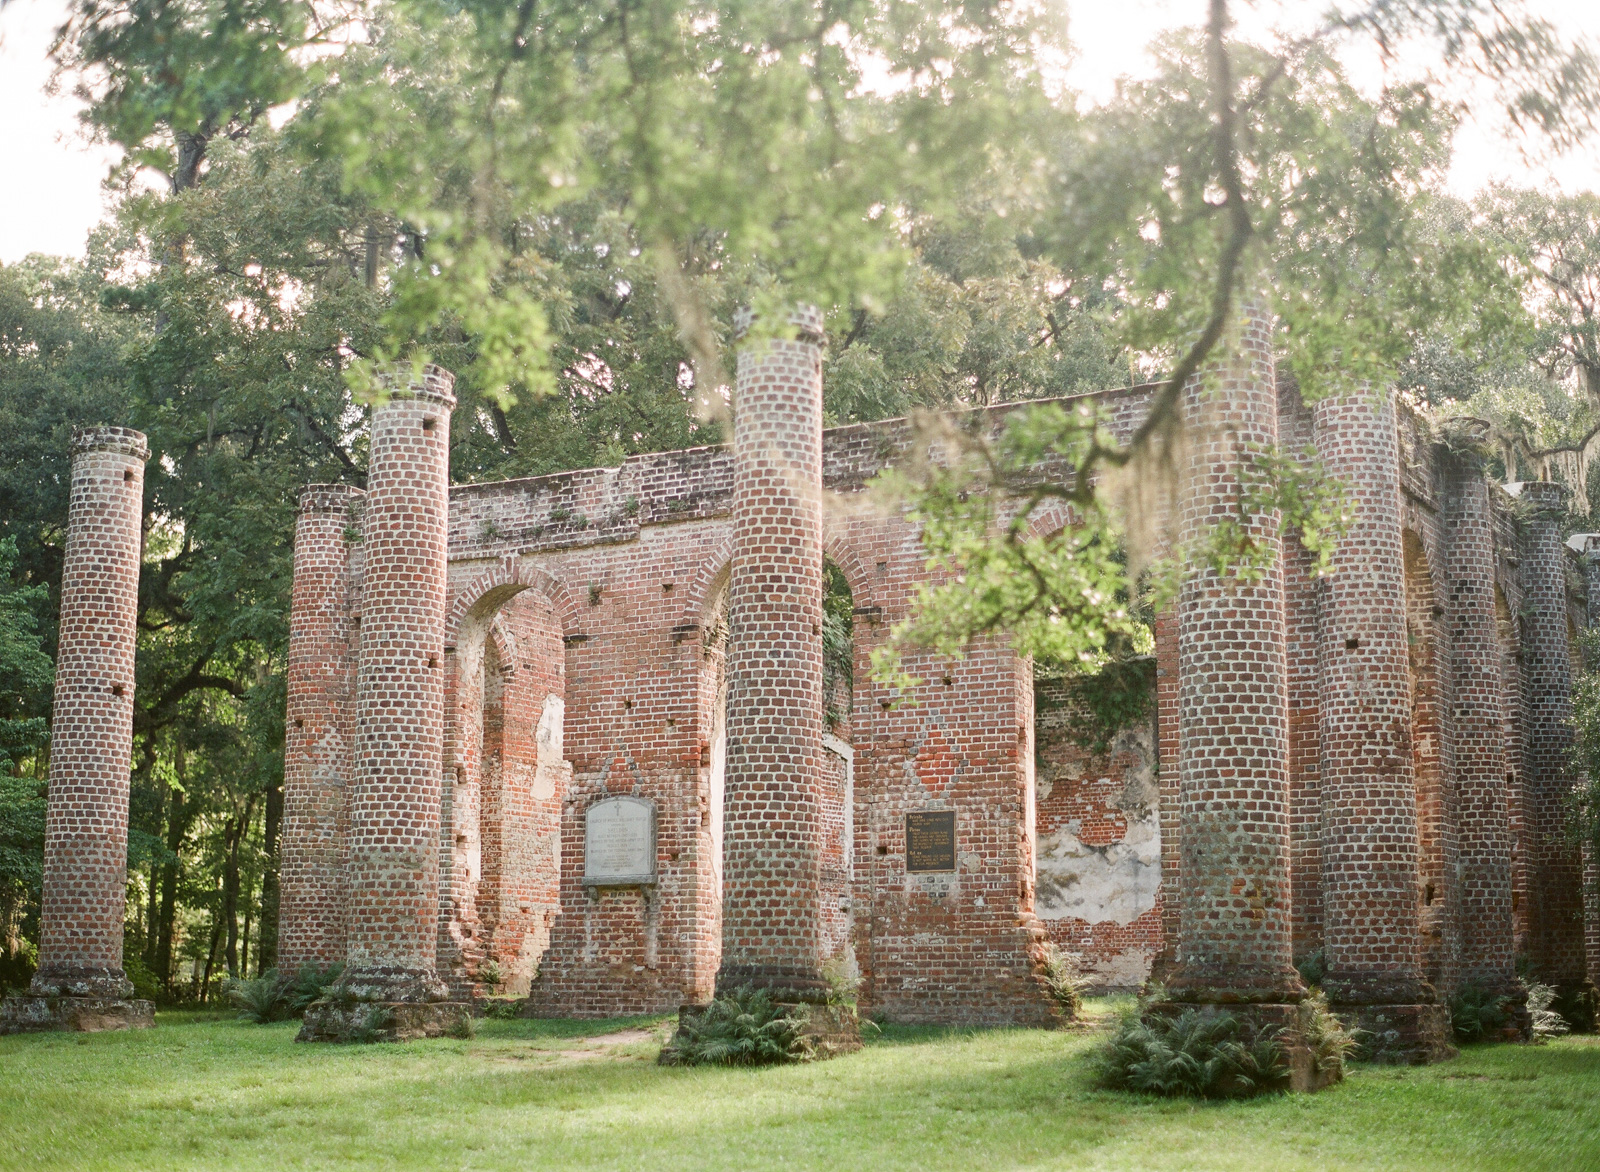 Charleston Photographer, Charleston Wedding Photographer, Travel Photography, Film Photography, Old Sheldon Church Ruins